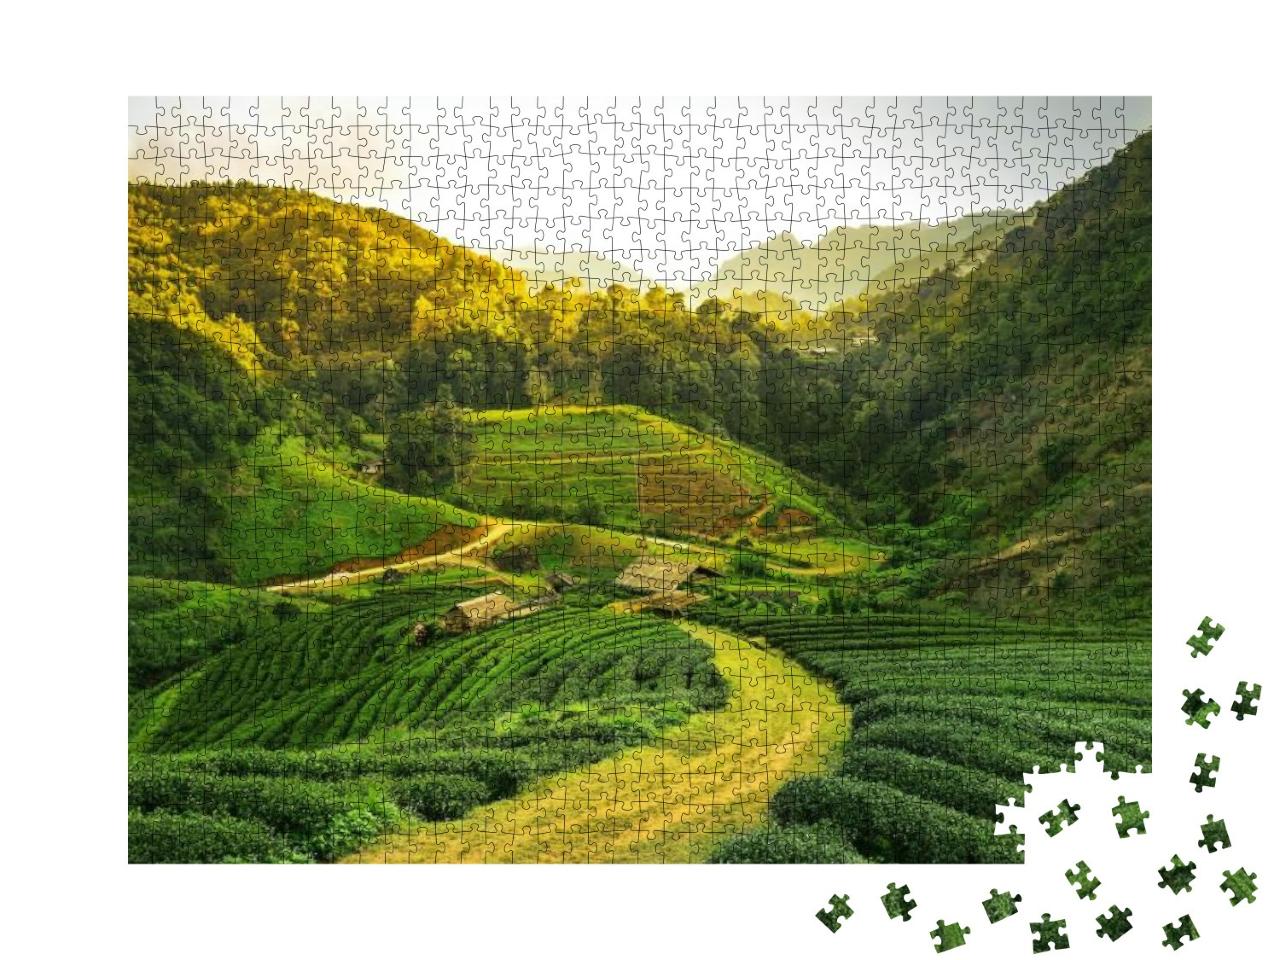 Puzzle 1000 Teile „Blick auf eine Teeplantage bei Sonnenaufgang“